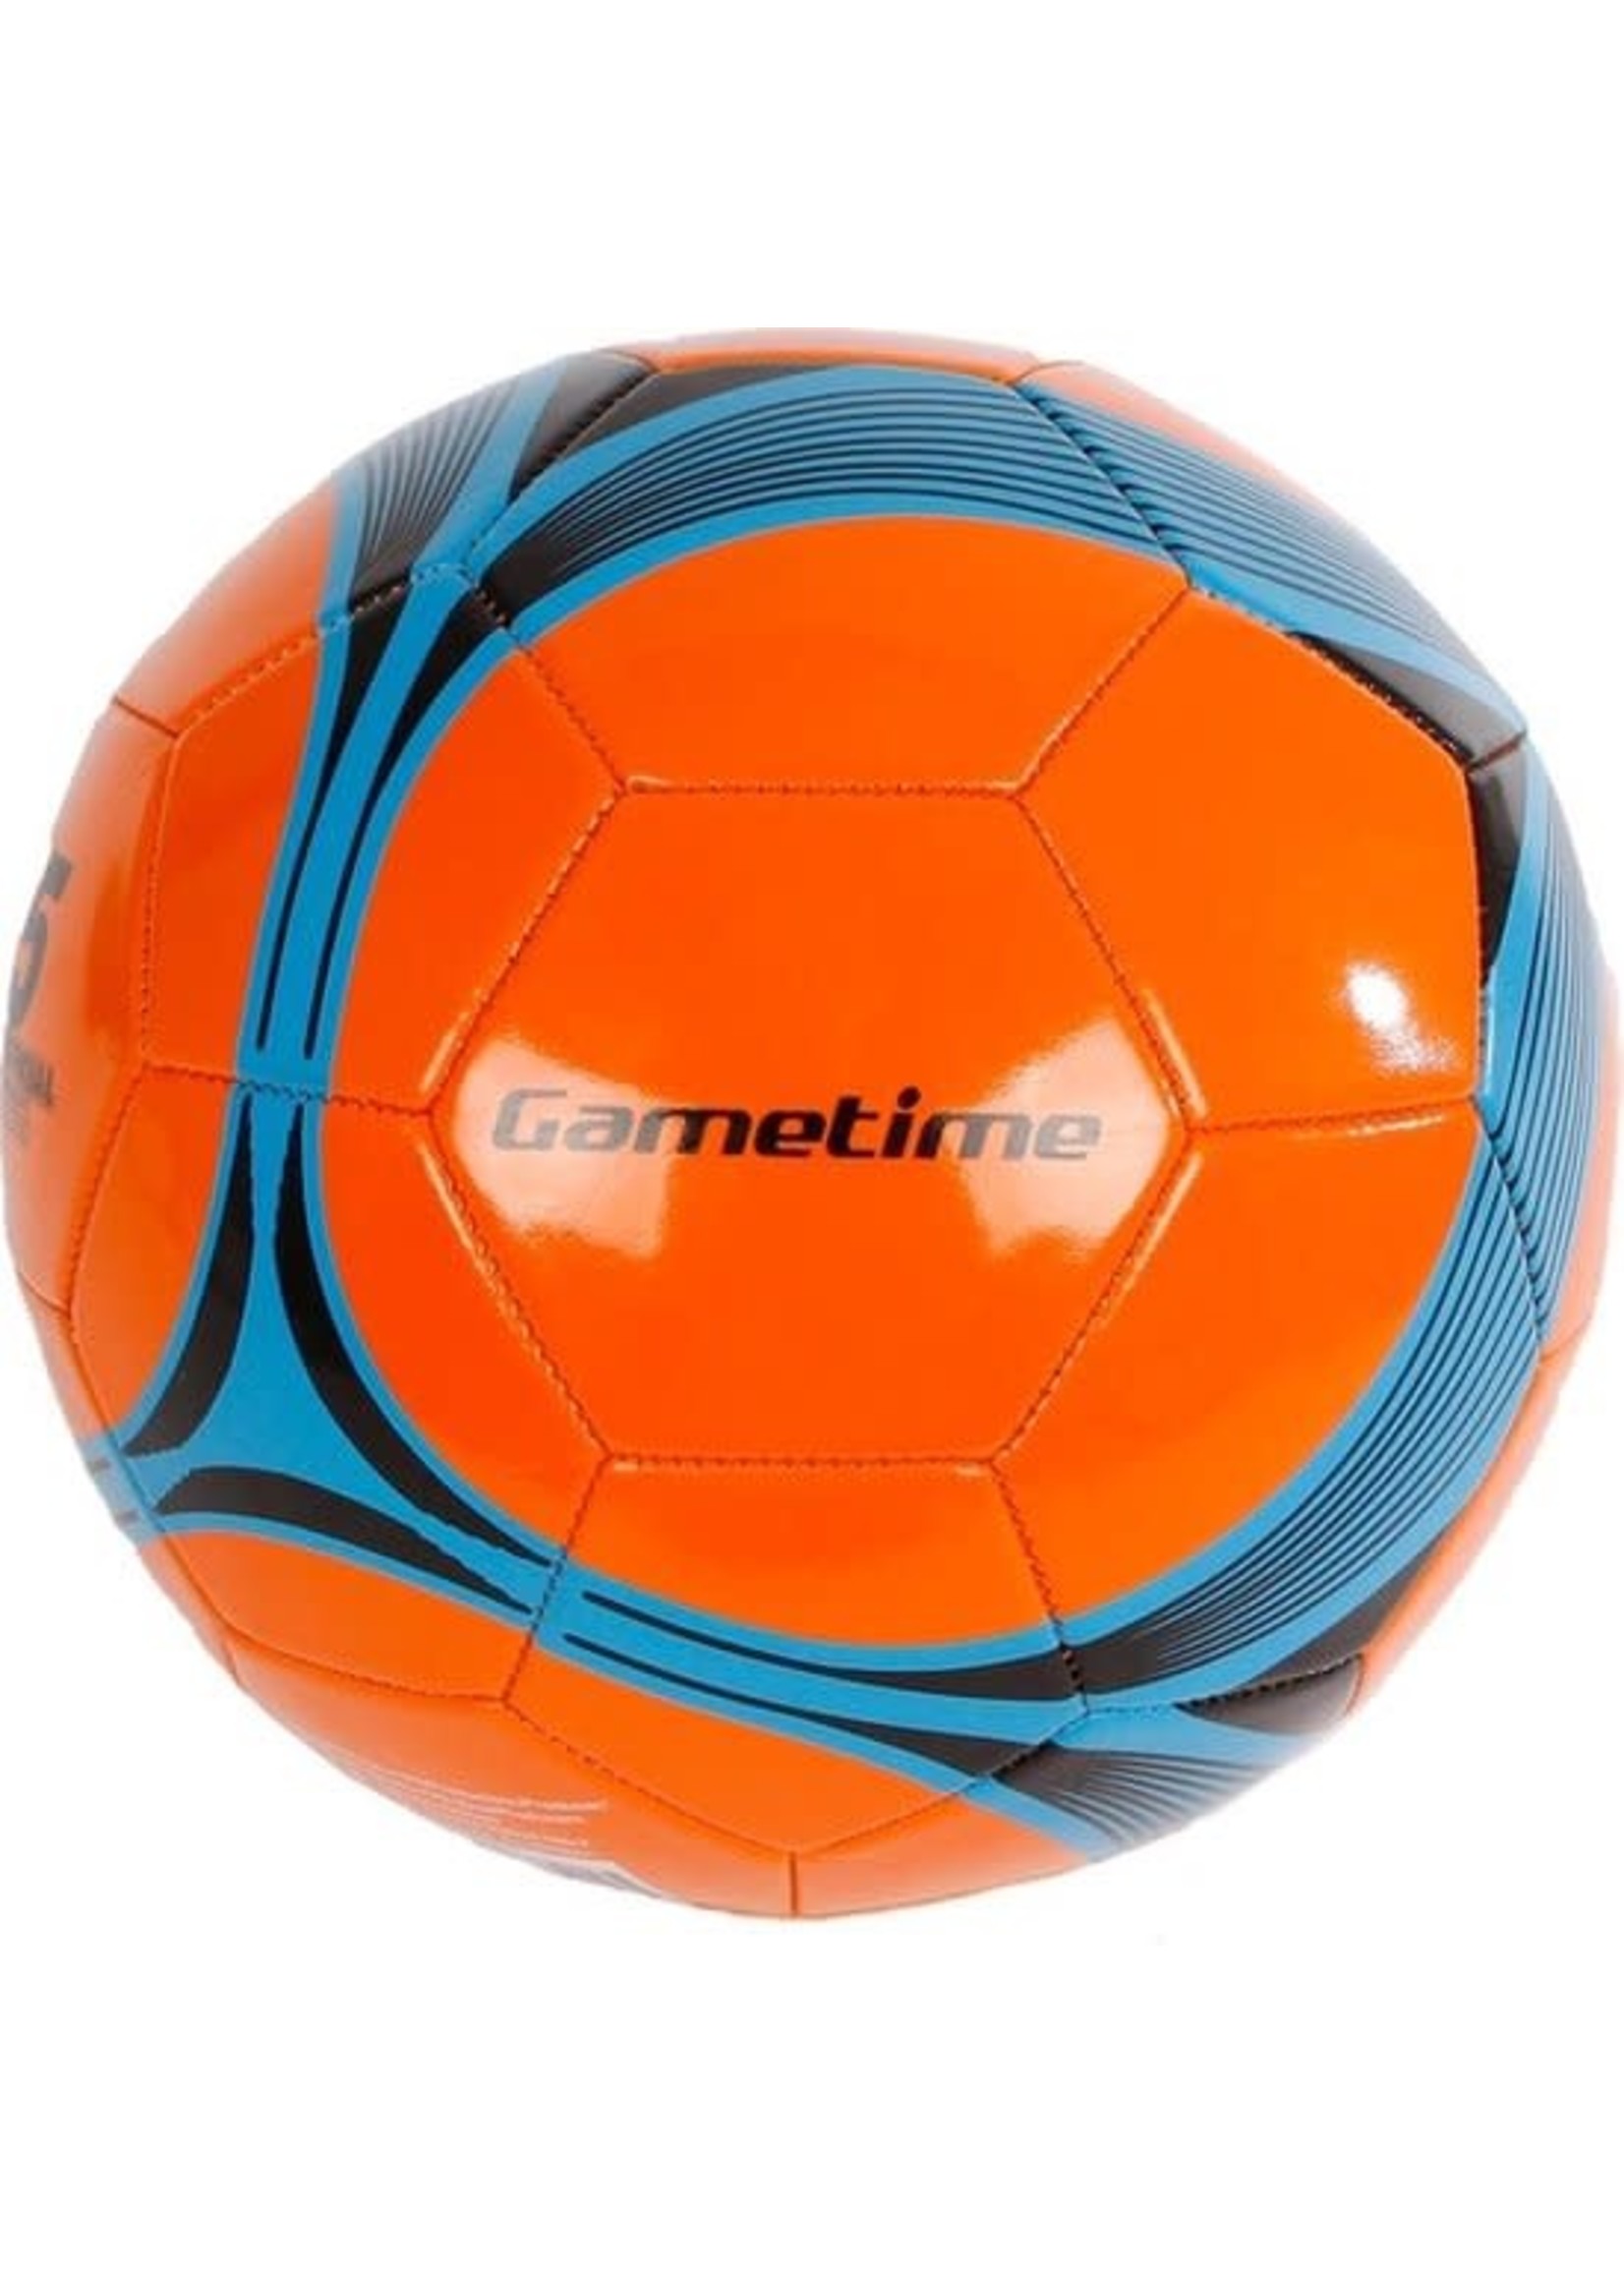 Gametime voetbal synthetisch leer oranje maat 5 260-280gr